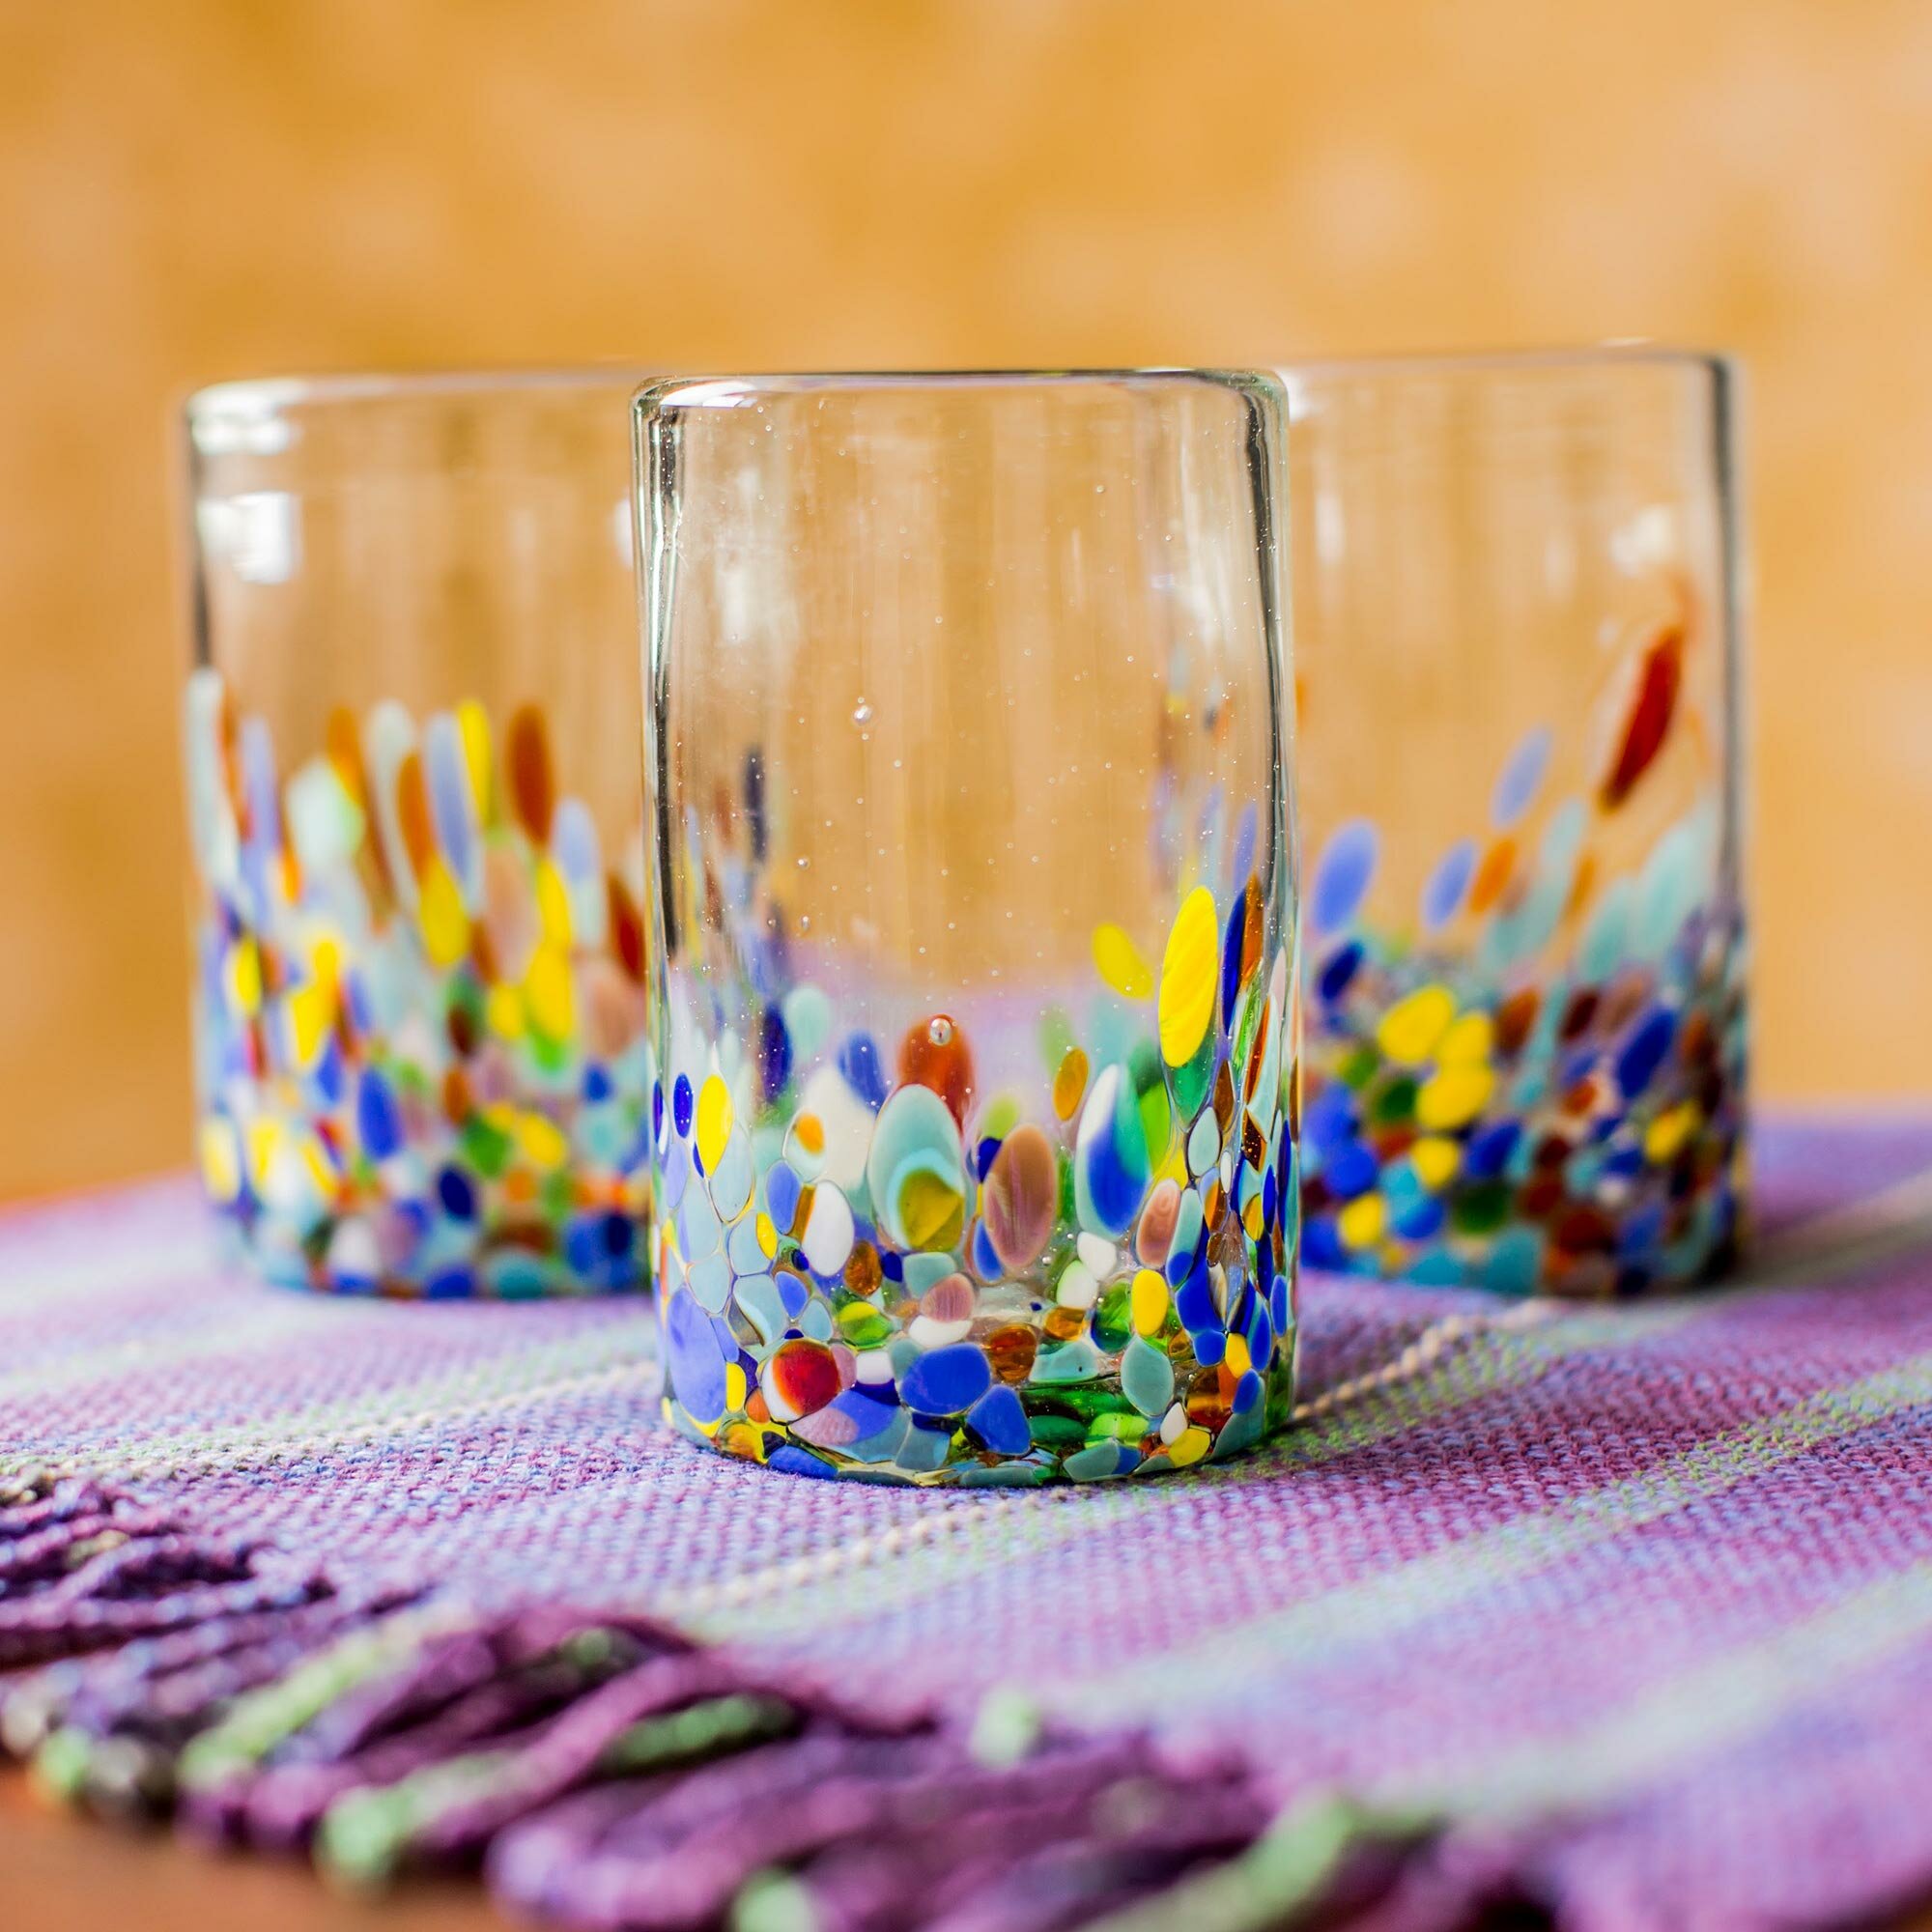 Set of six (6) 16 oz. Multi Color, Confetti Swirl Mexican glasses